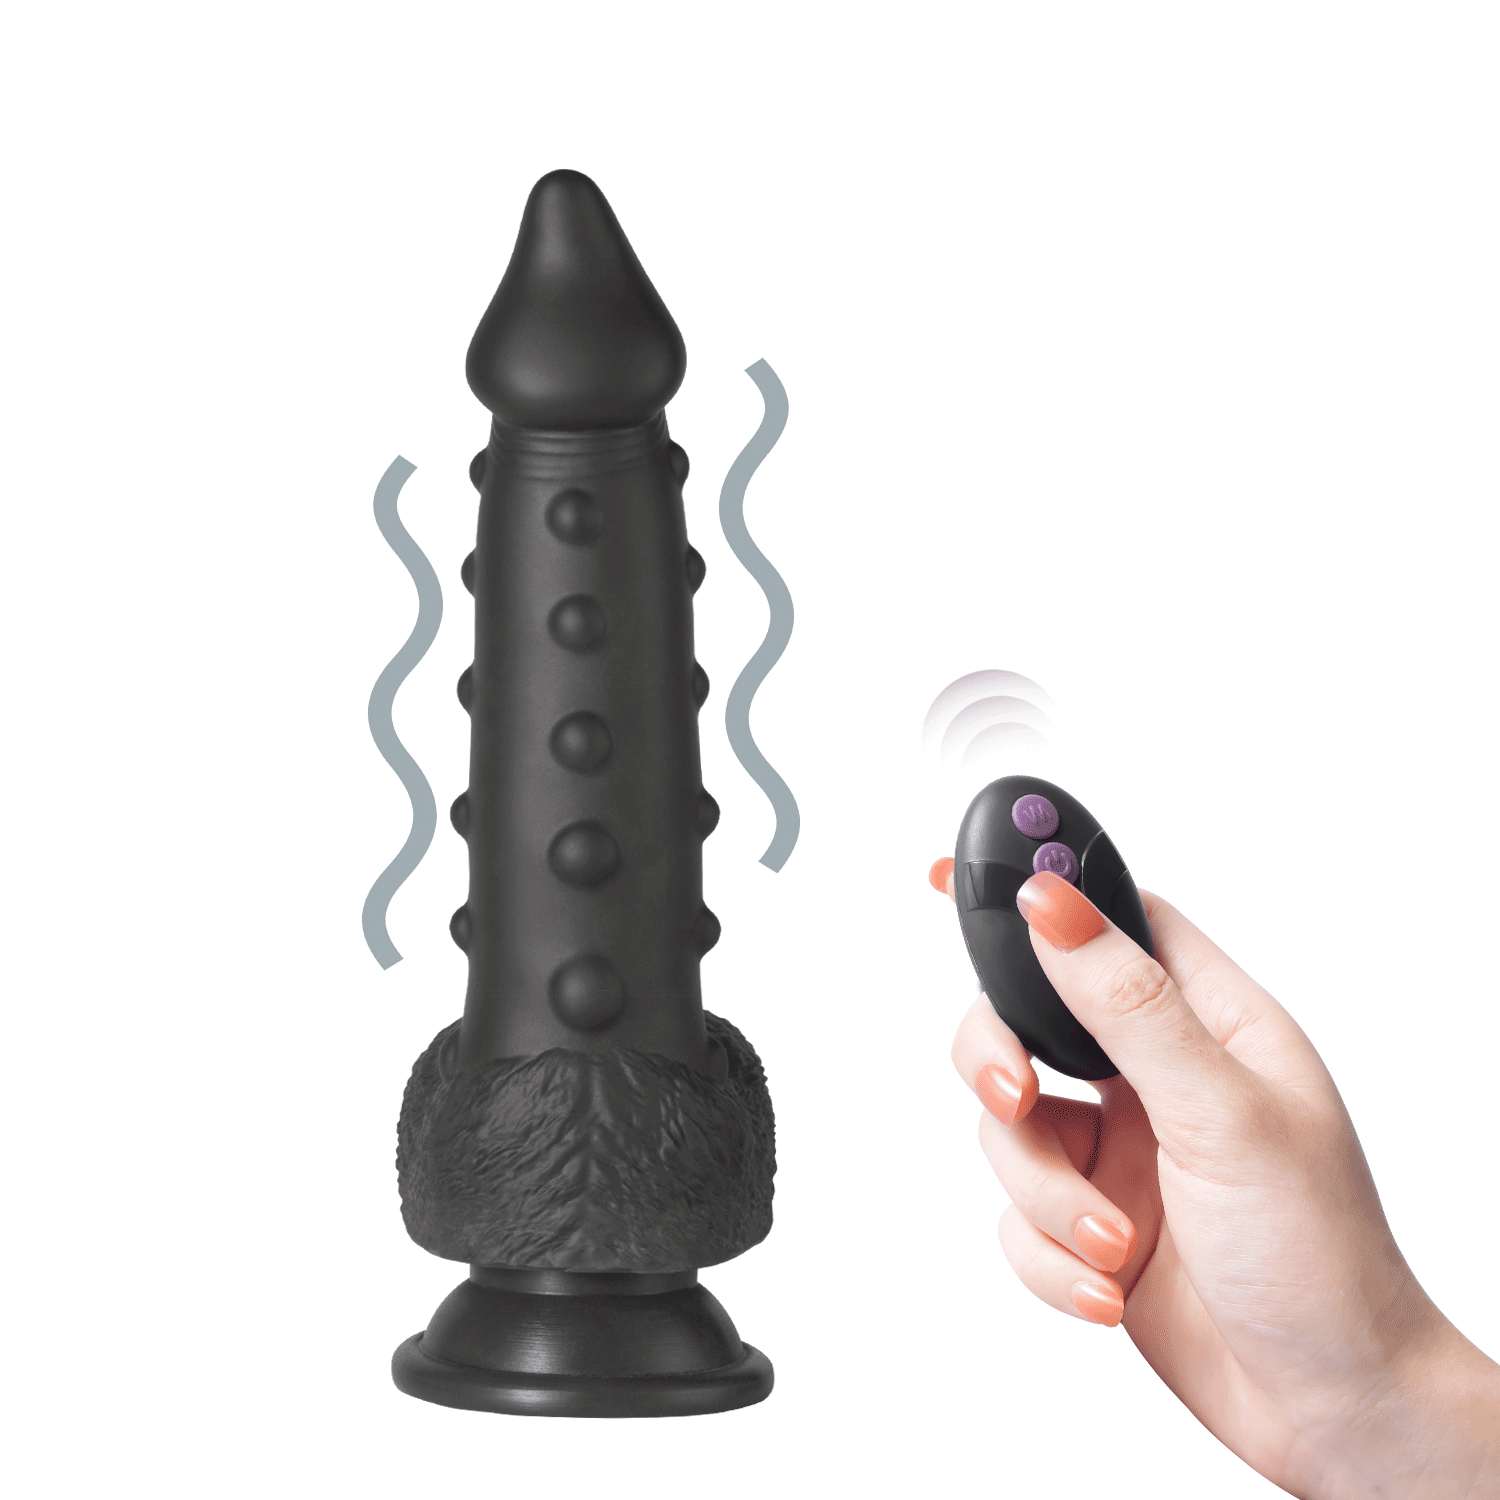 Alger - 8 inch penis thrusting black dildo